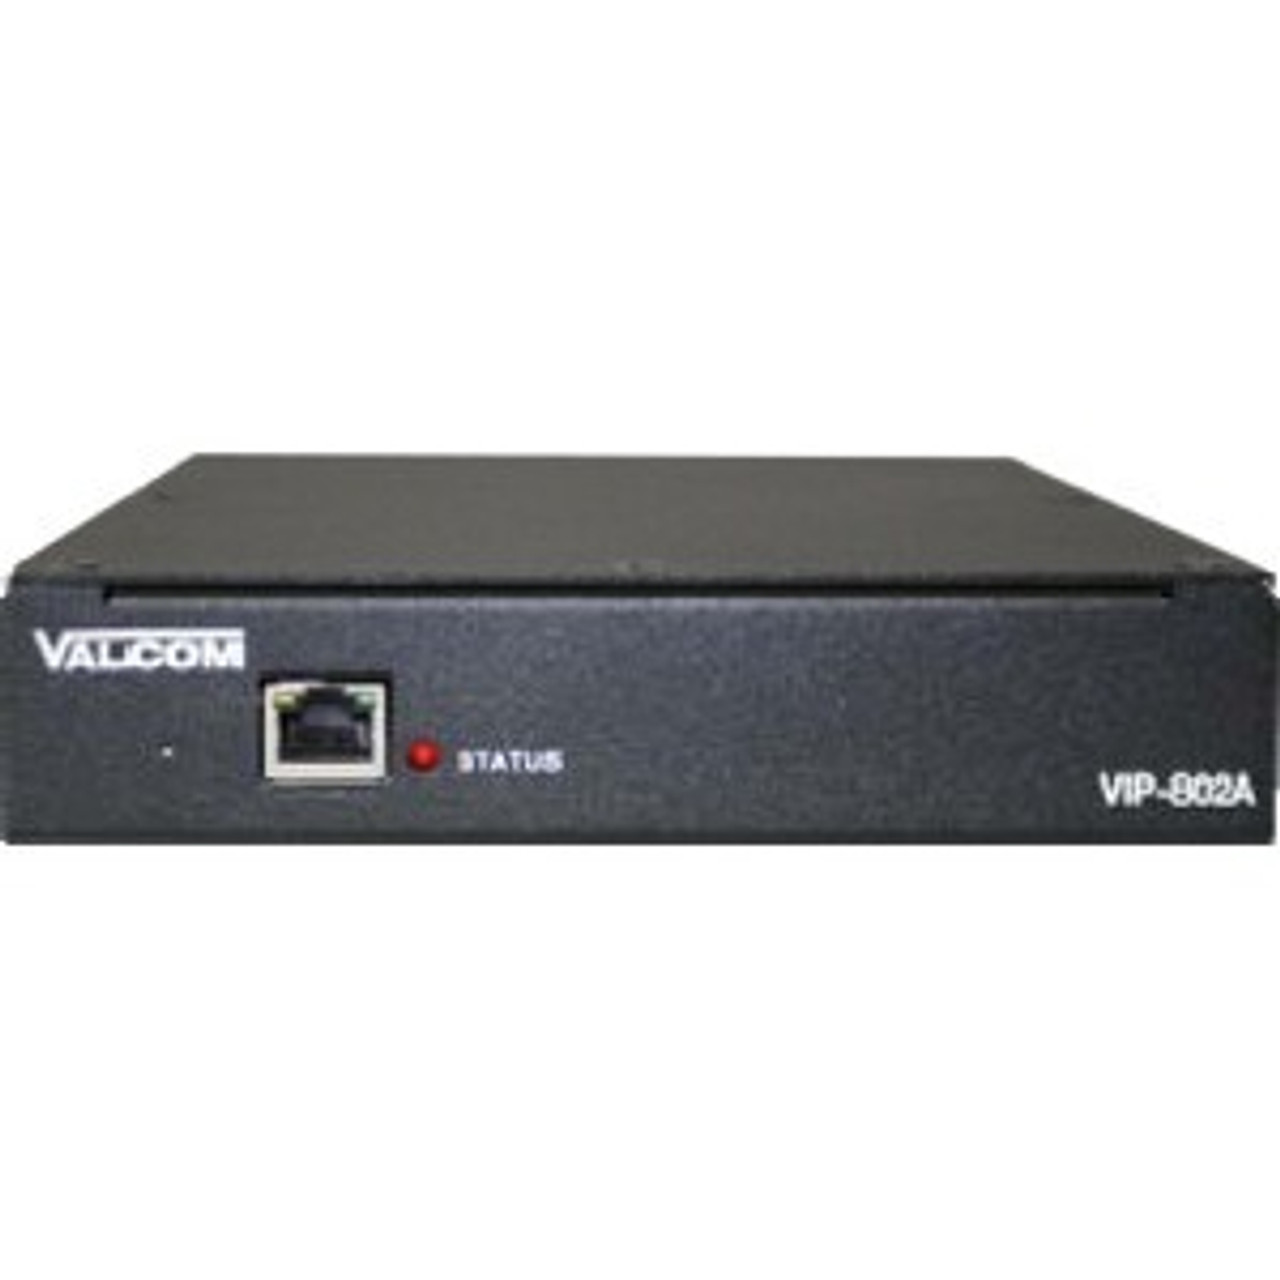 VIP-802A Valcom Dual Enhanced Network Audio Port